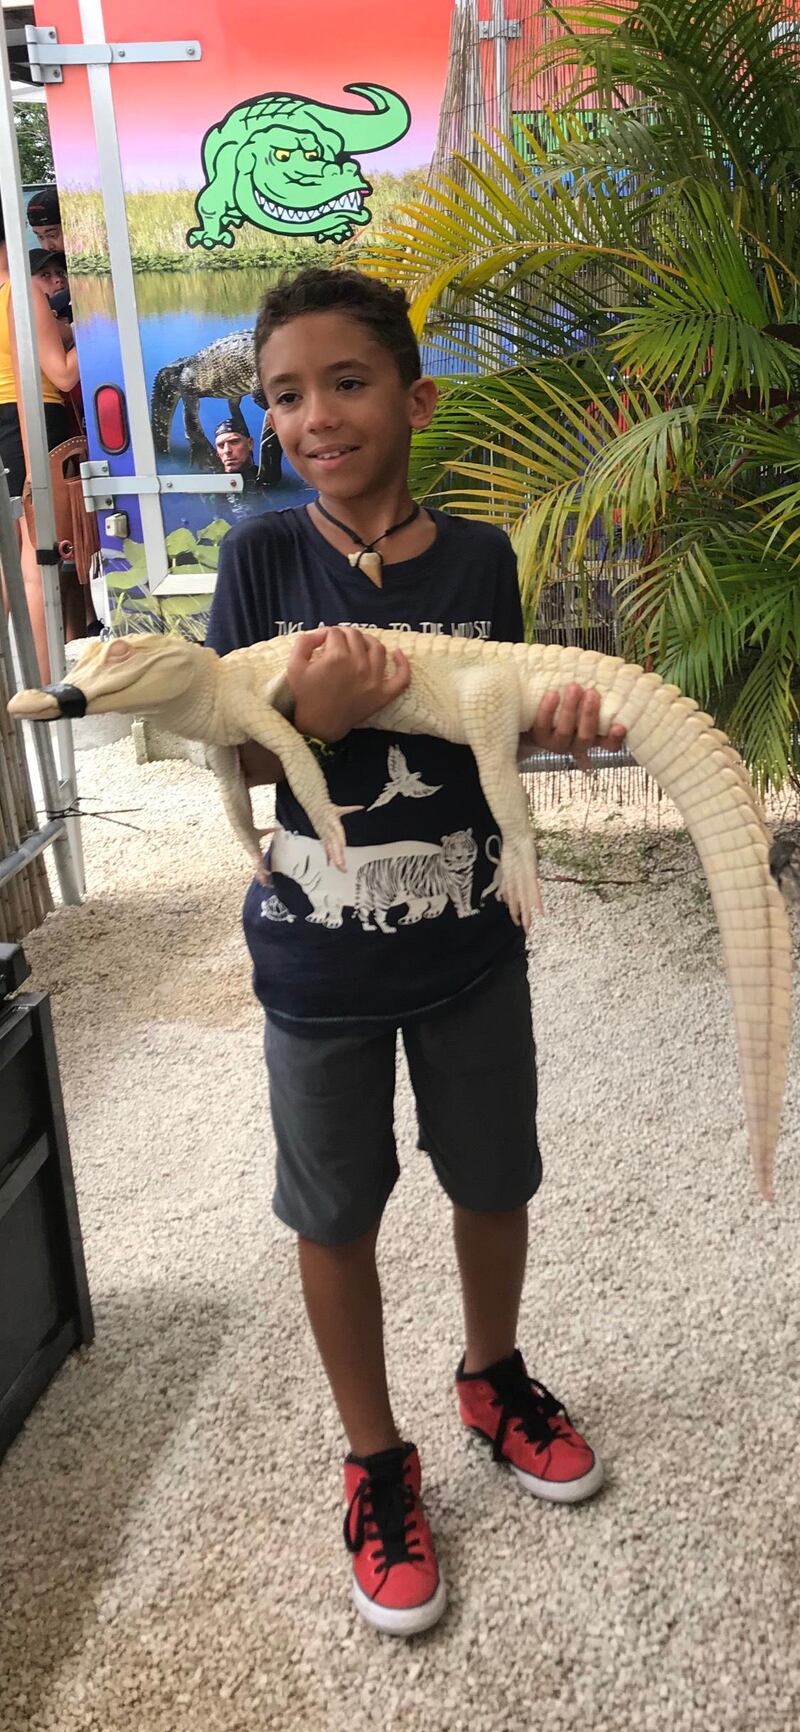 Mario in the Everglades, Florida, holding an alligator. 
Courtesy: Nani Montero